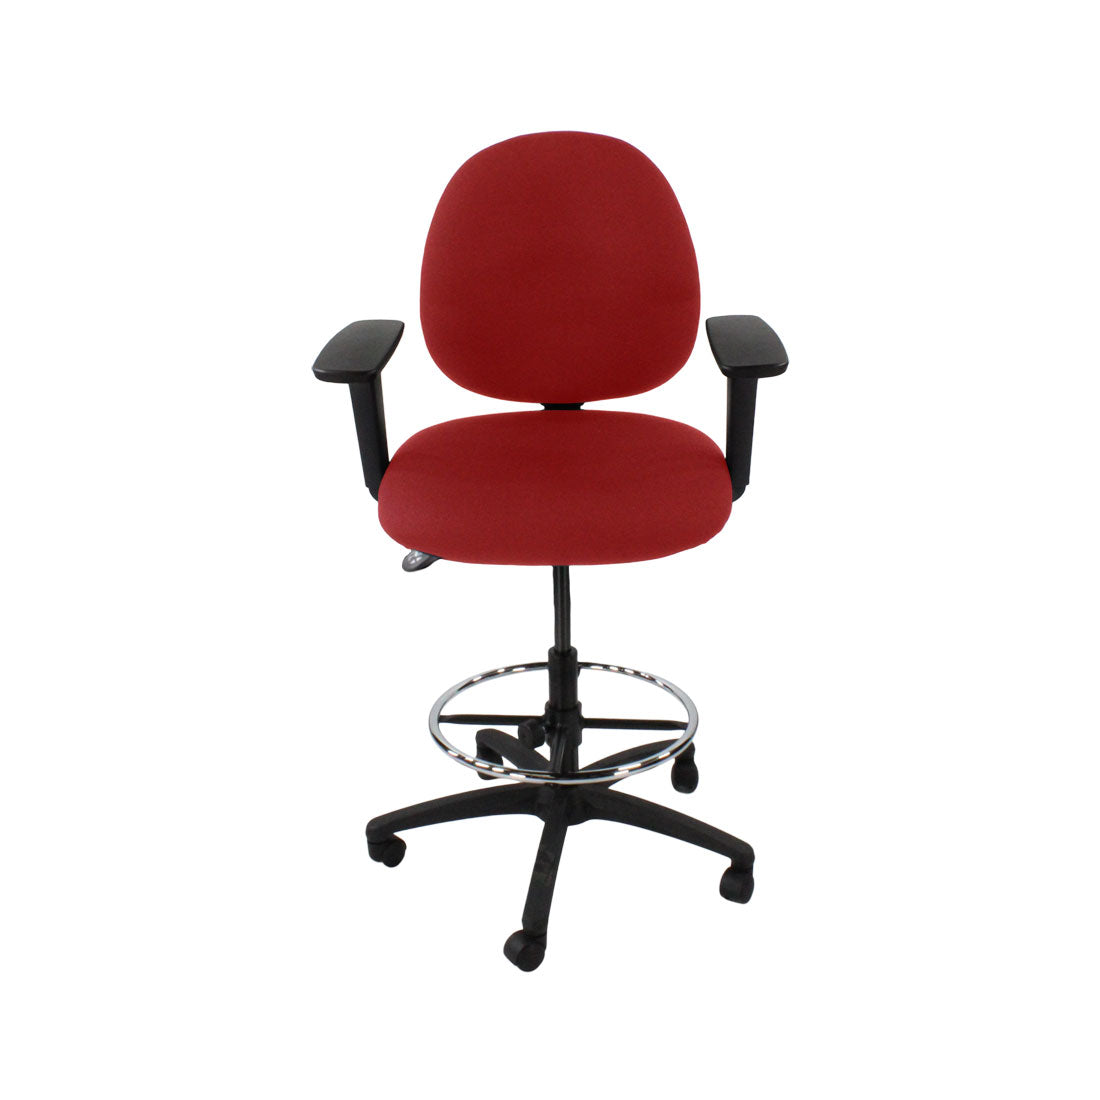 Inhaltsverzeichnis: Scoop Draftsman Chair aus rotem Stoff – generalüberholt